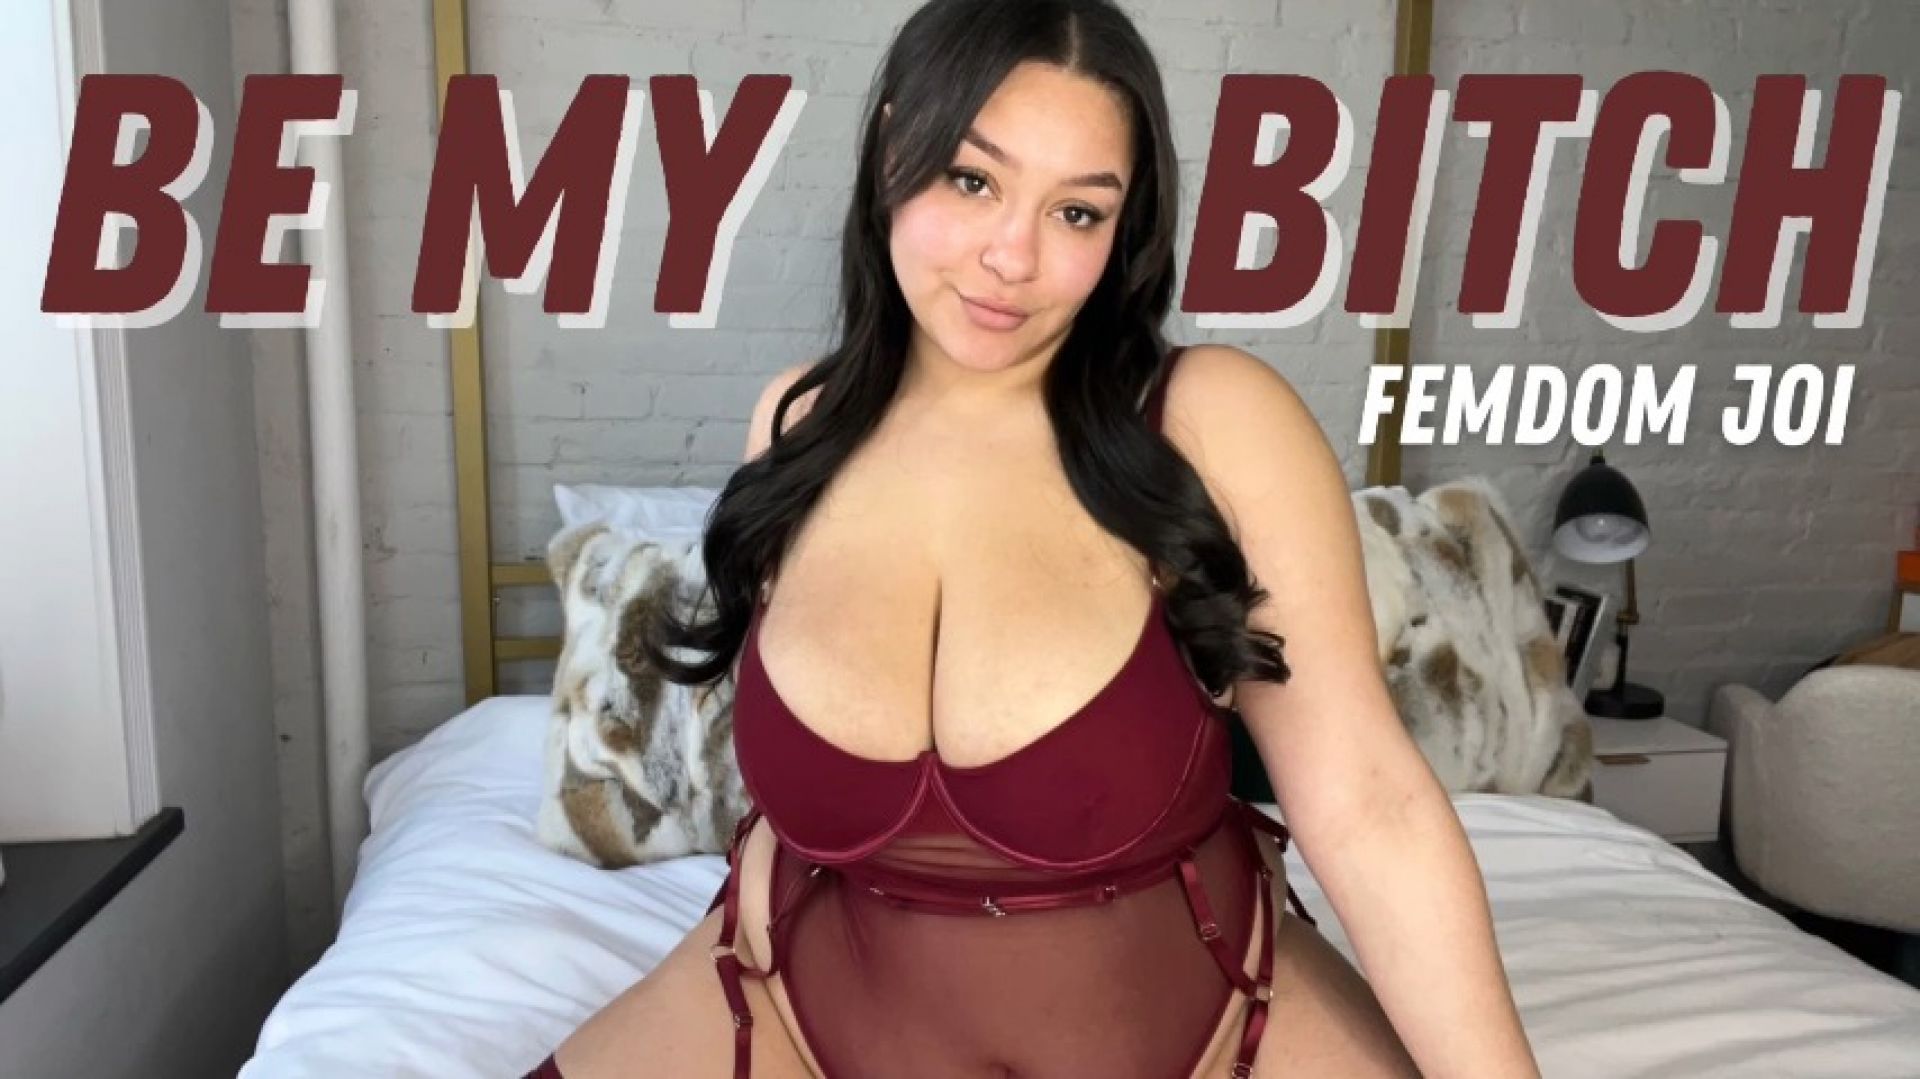 Be My Bitch: FemDom Slave Training JOI